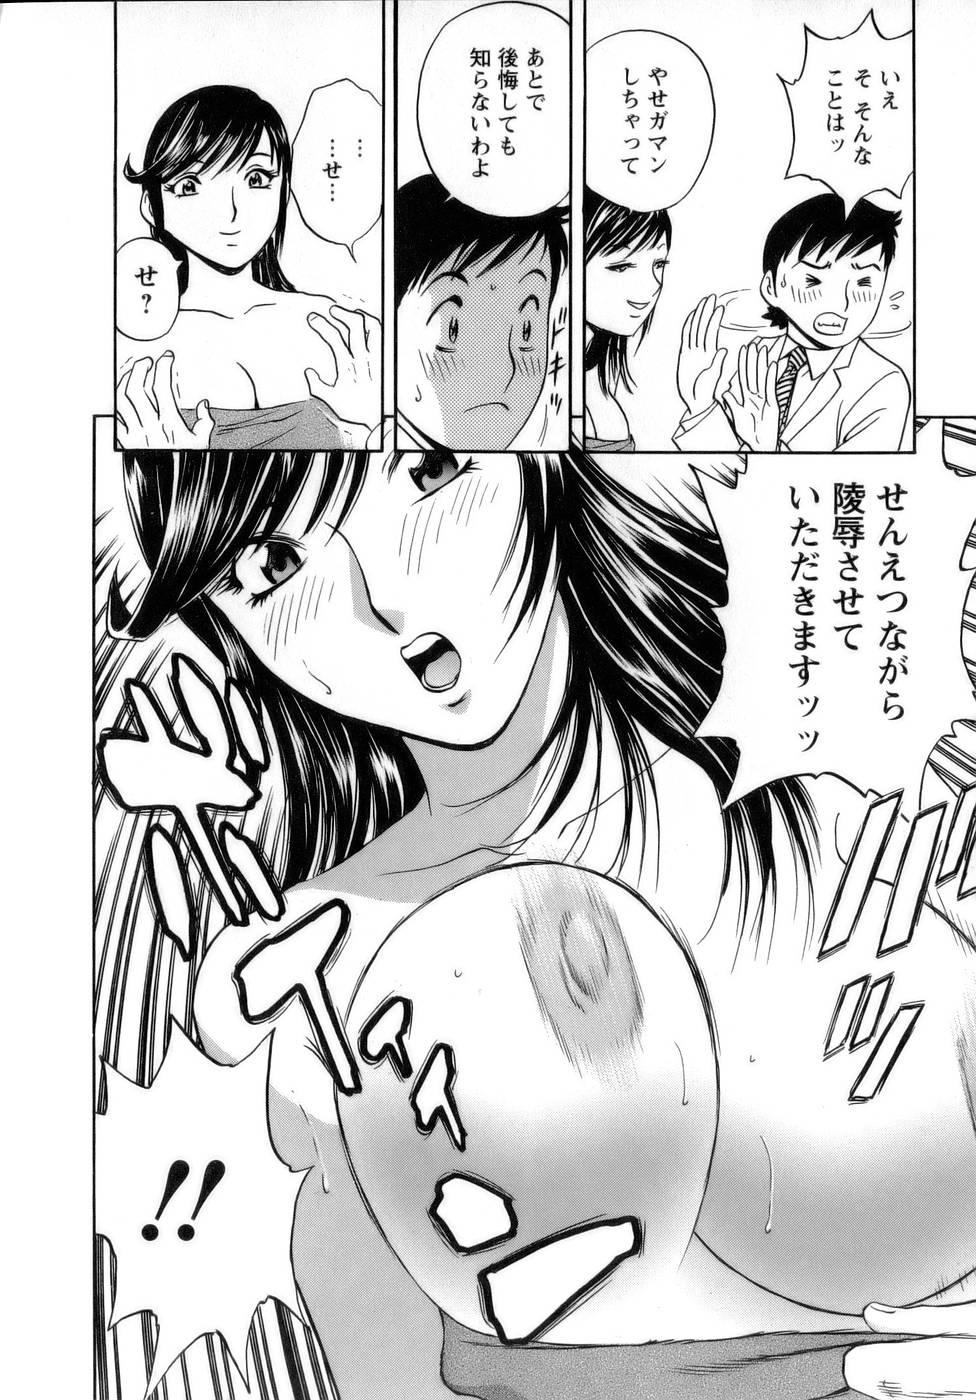 [Hidemaru] Mo-Retsu! Boin Sensei (Boing Boing Teacher) Vol.1 87